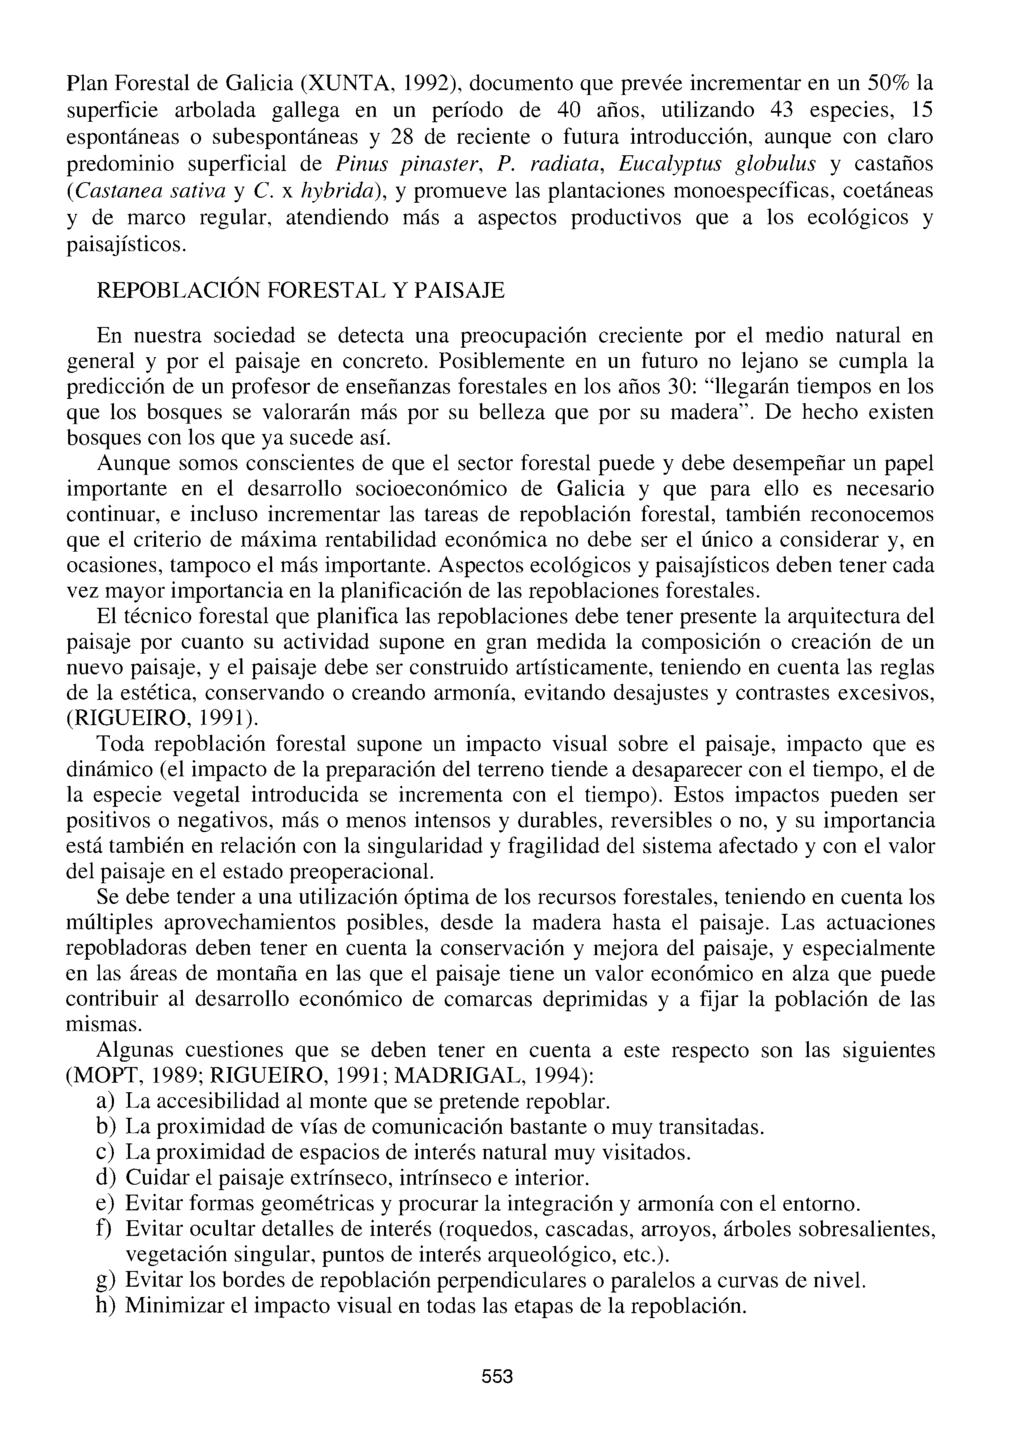 Plan Forestal de Galicia (XUNT A, 1992), documento que prevée incrementar en un 50% la superficie arbolada gallega en un período de 40 años, utilizando 43 especies, 15 espontáneas o subespontáneas y